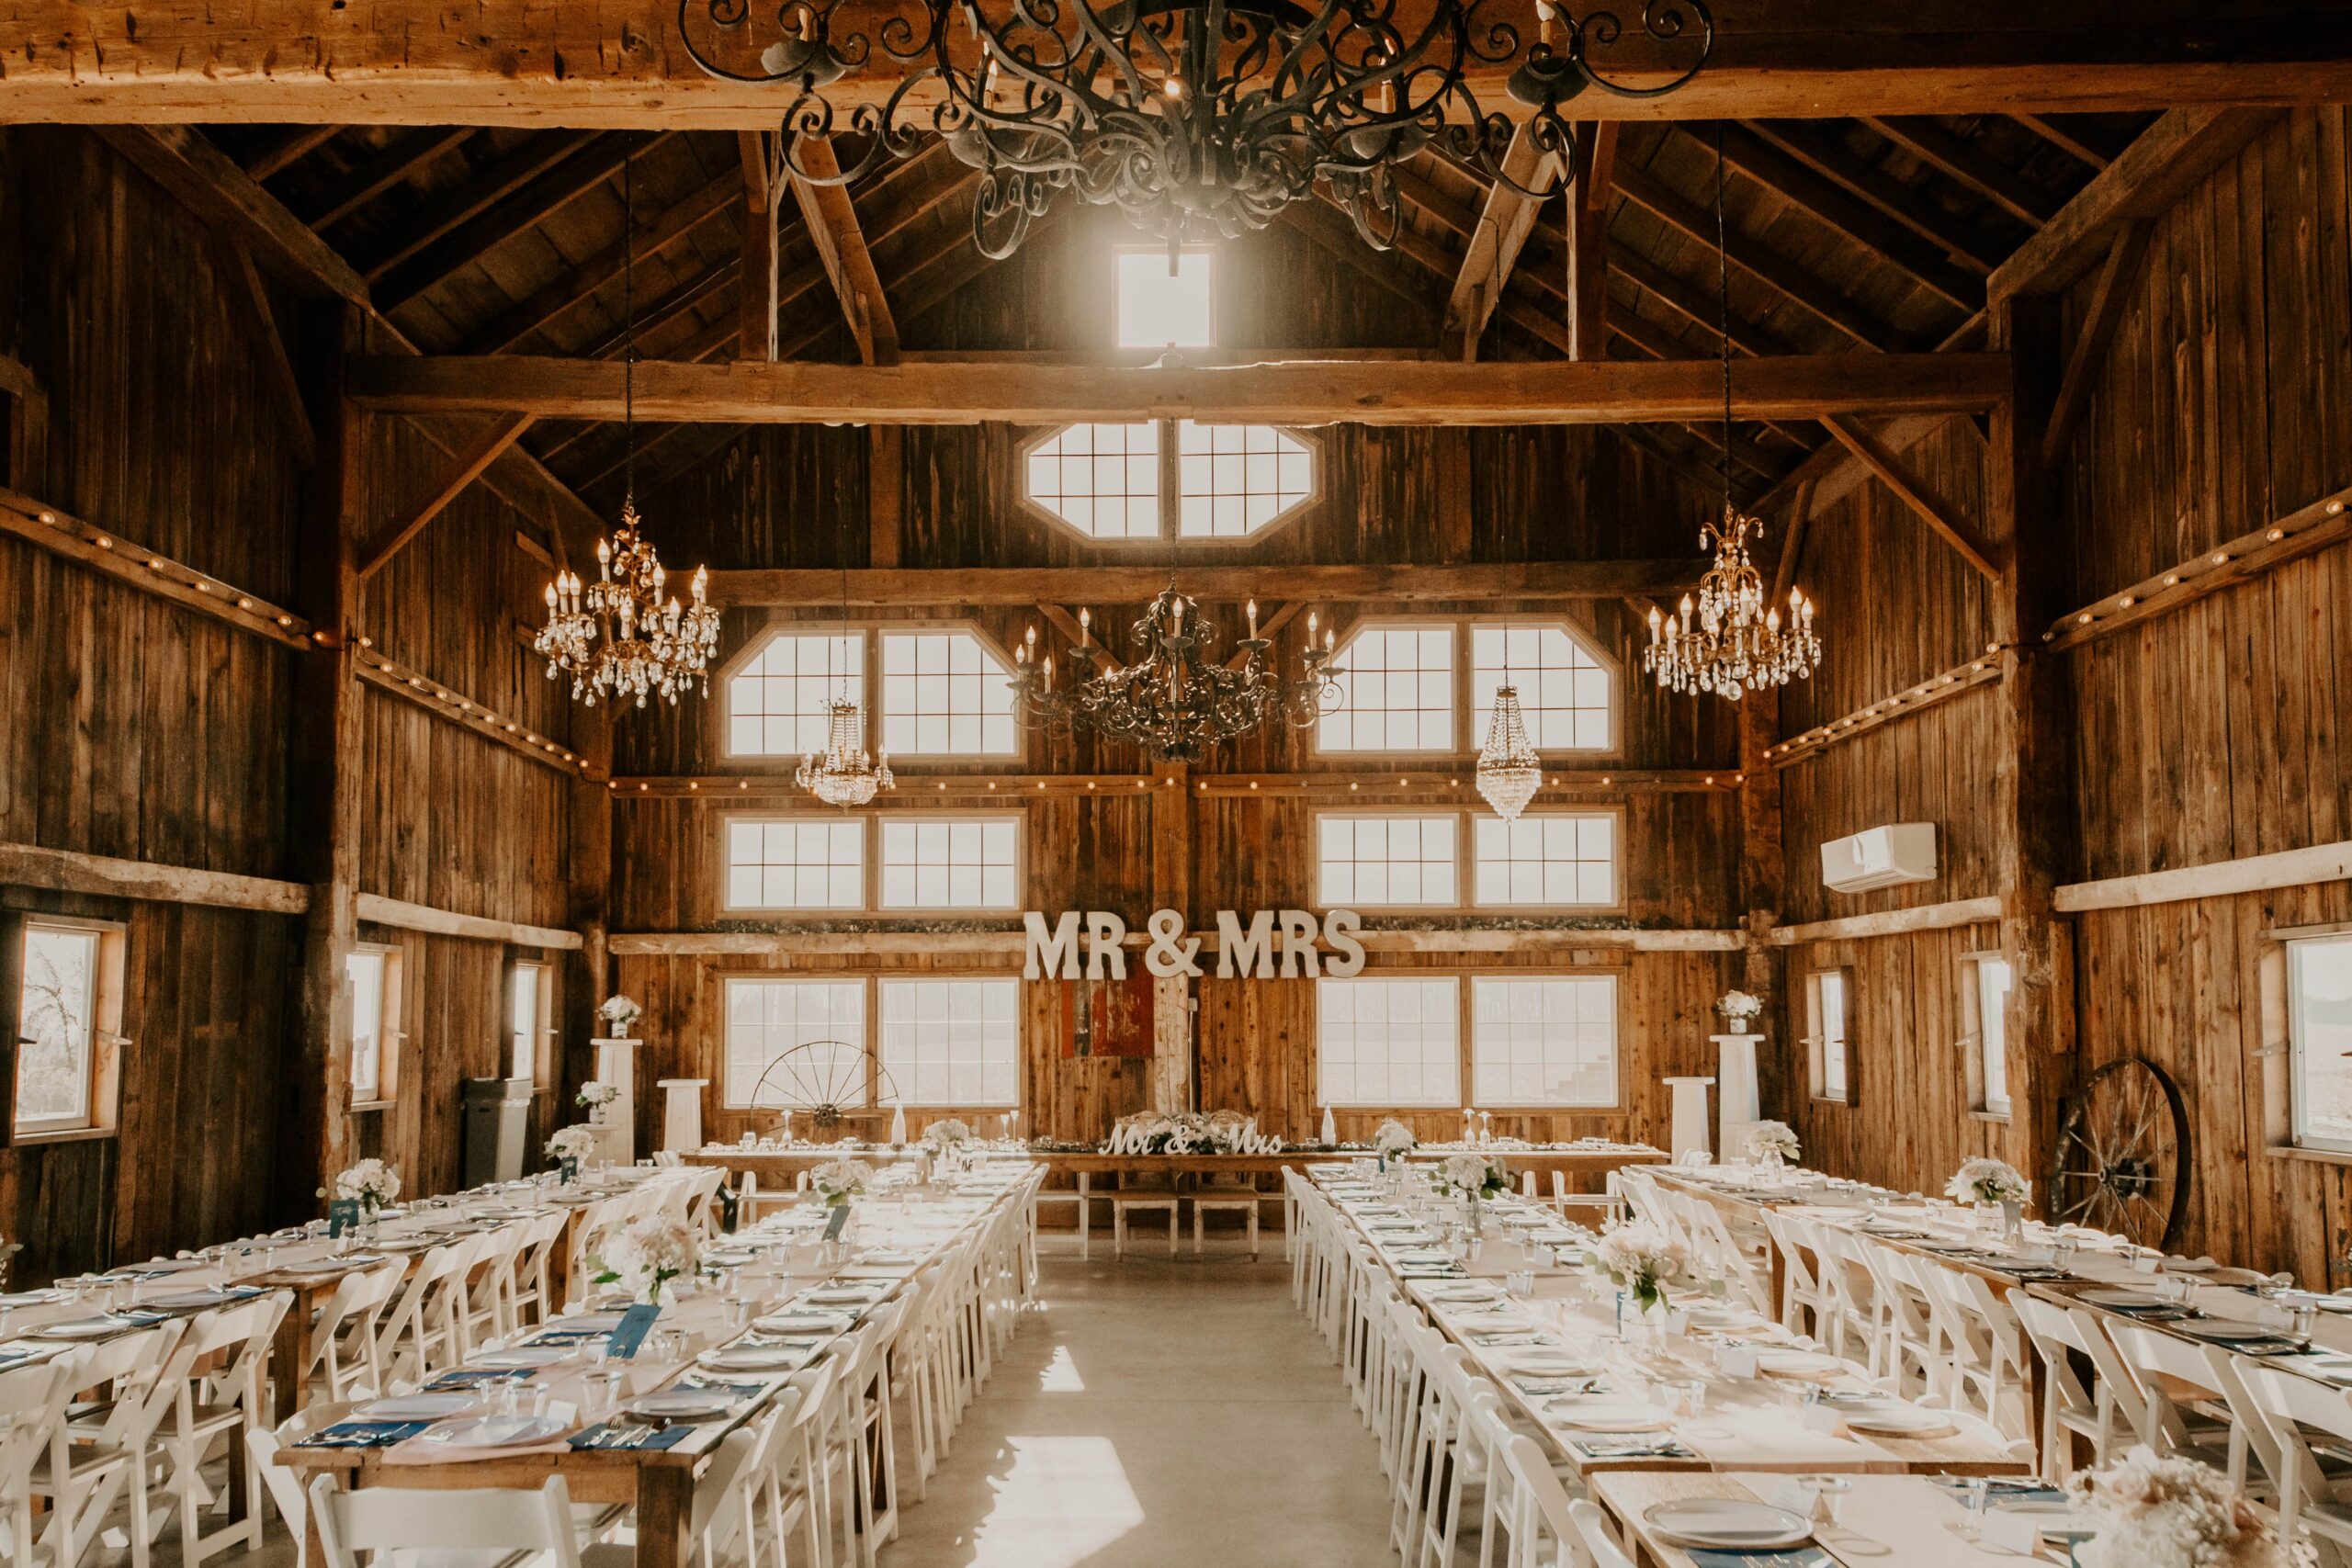 Michigan barn wedding venue reception space